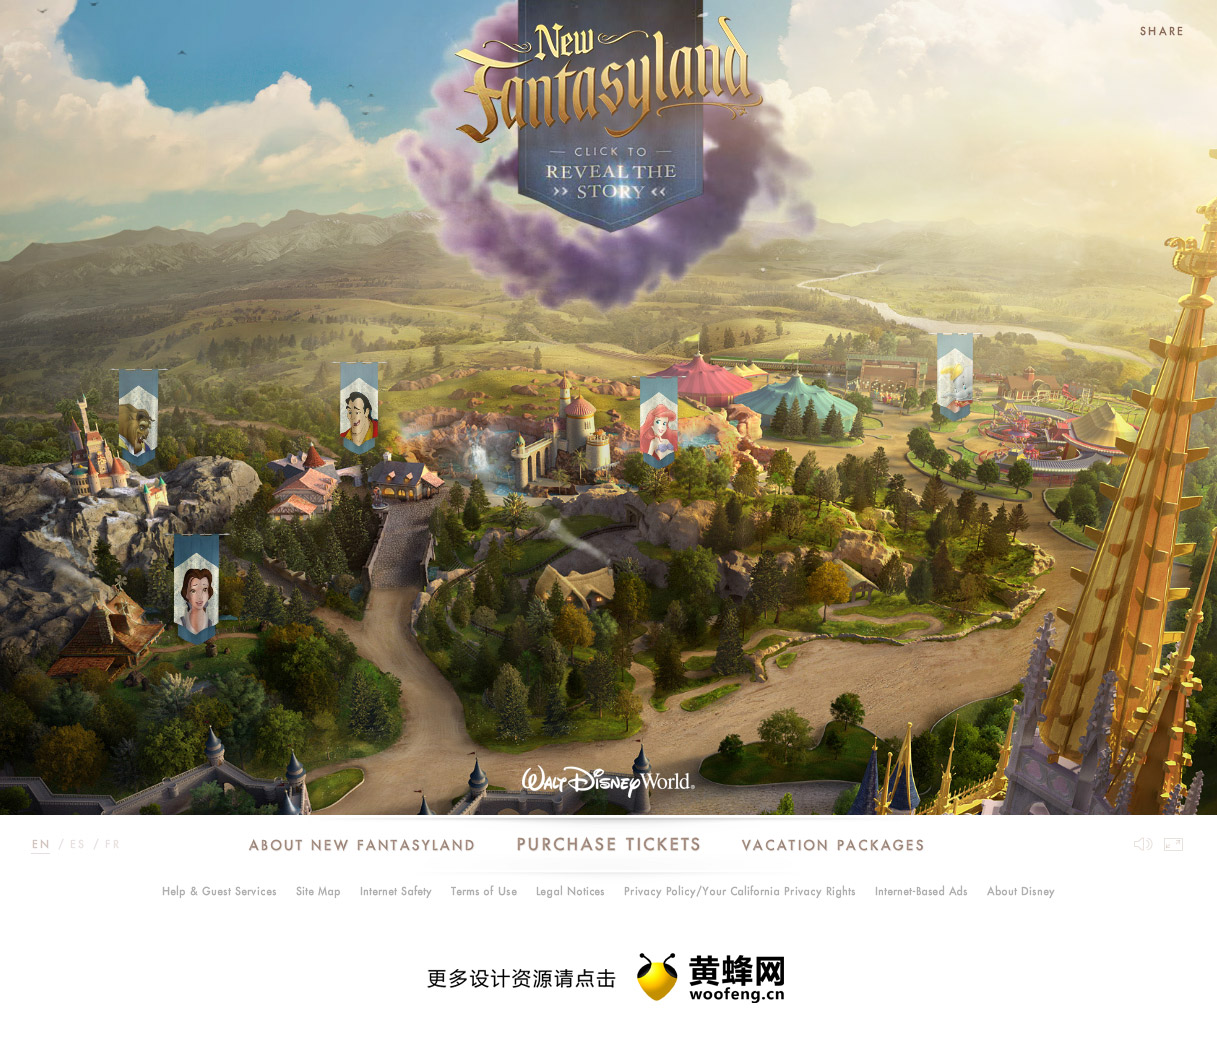 Fantasyland迪斯尼世界度假区，来源自黄蜂网https://woofeng.cn/web/